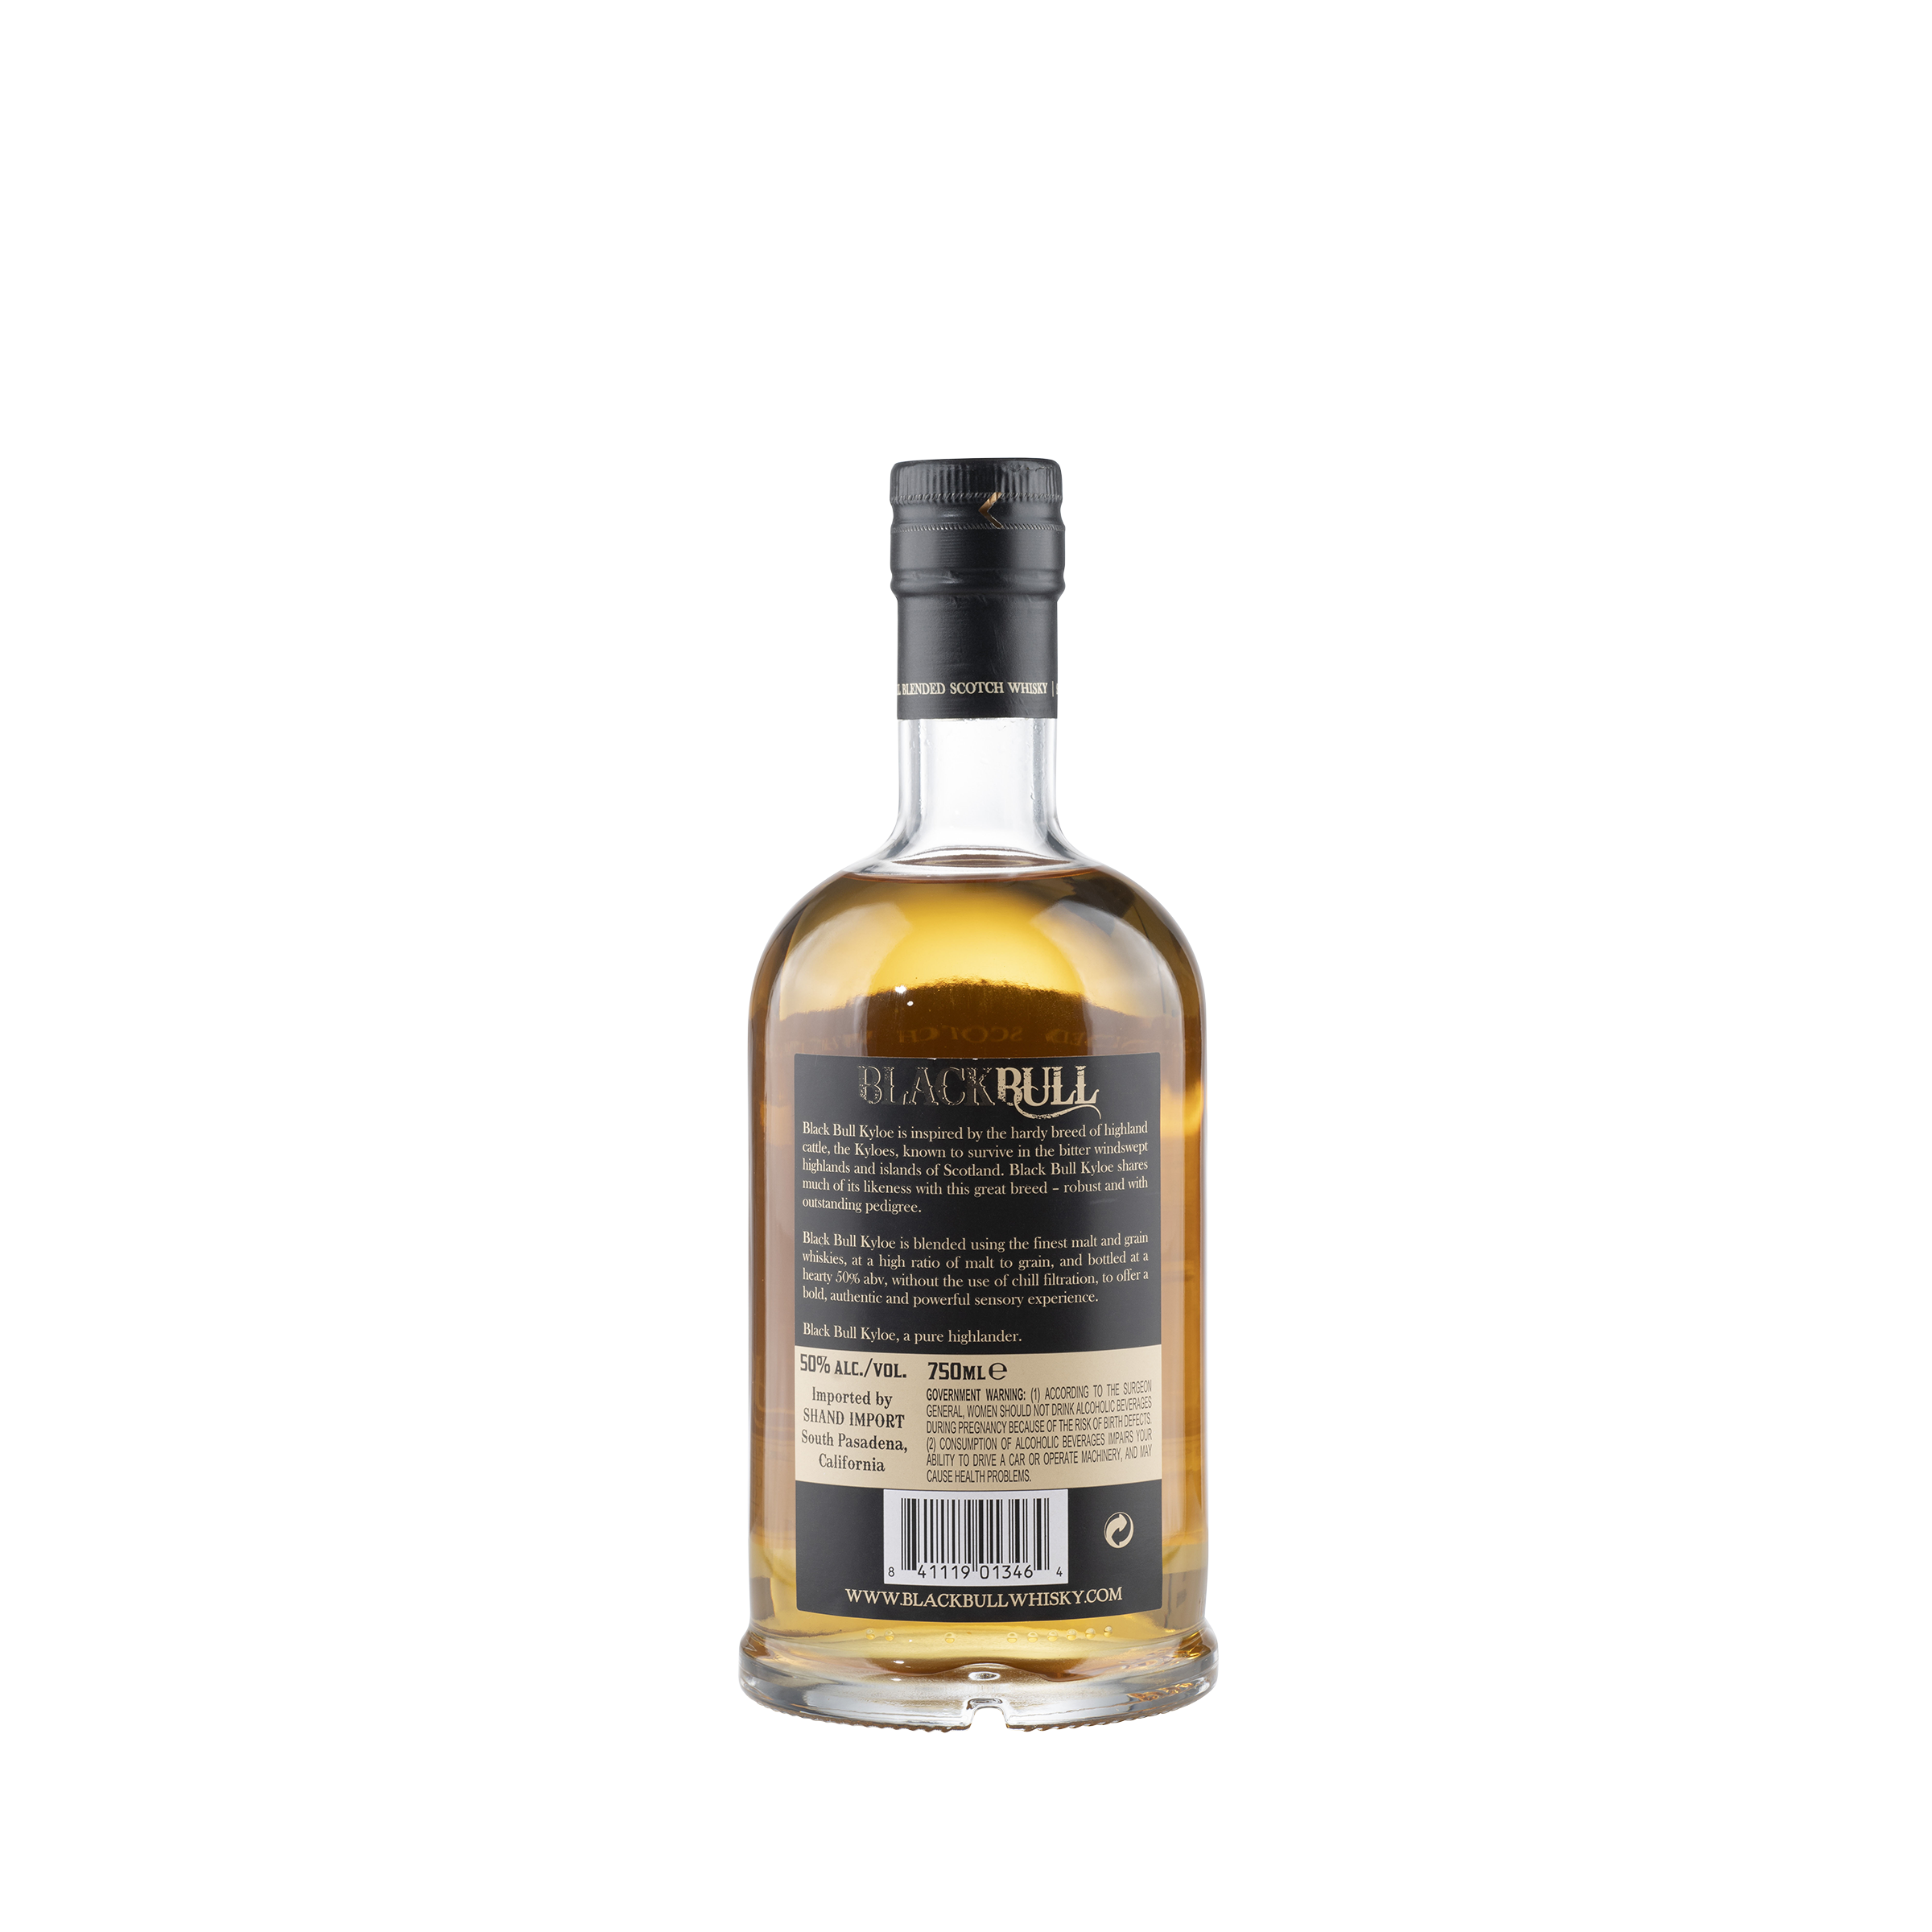 Black Bull Kyloe Blended Scotch Whisky NV Bottle Back